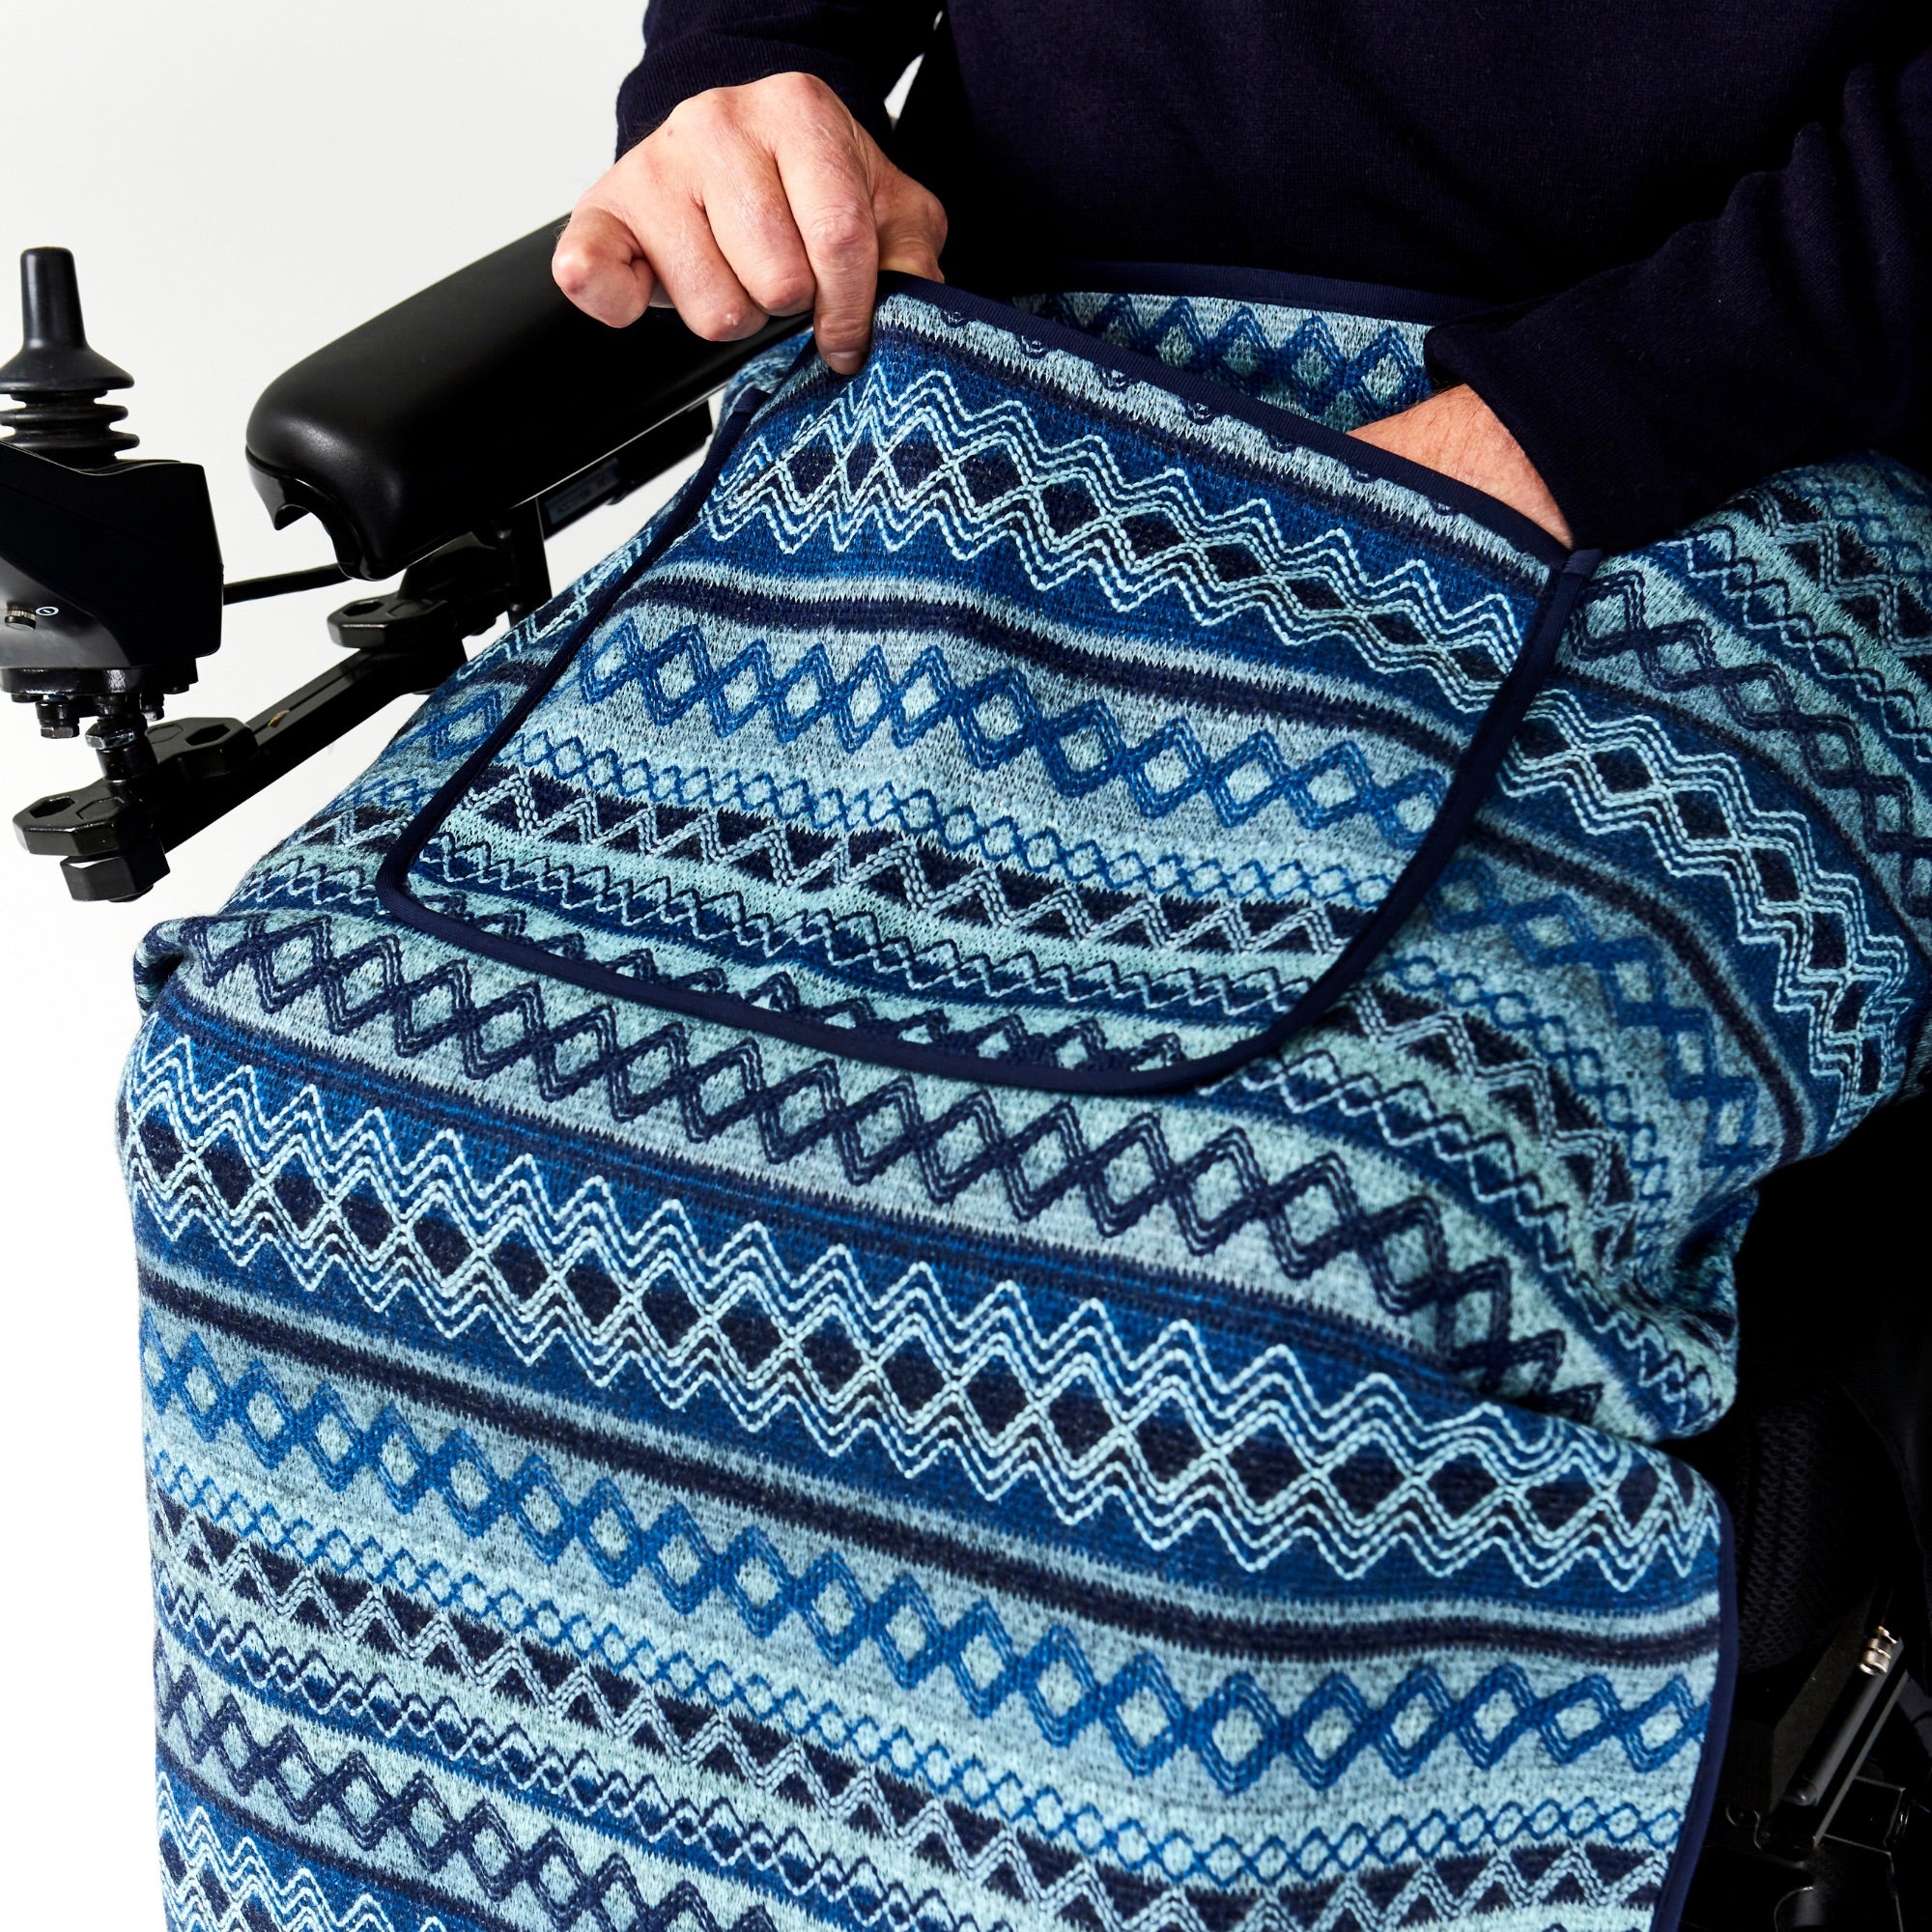 Seated Lap Blanket Argyle Knit